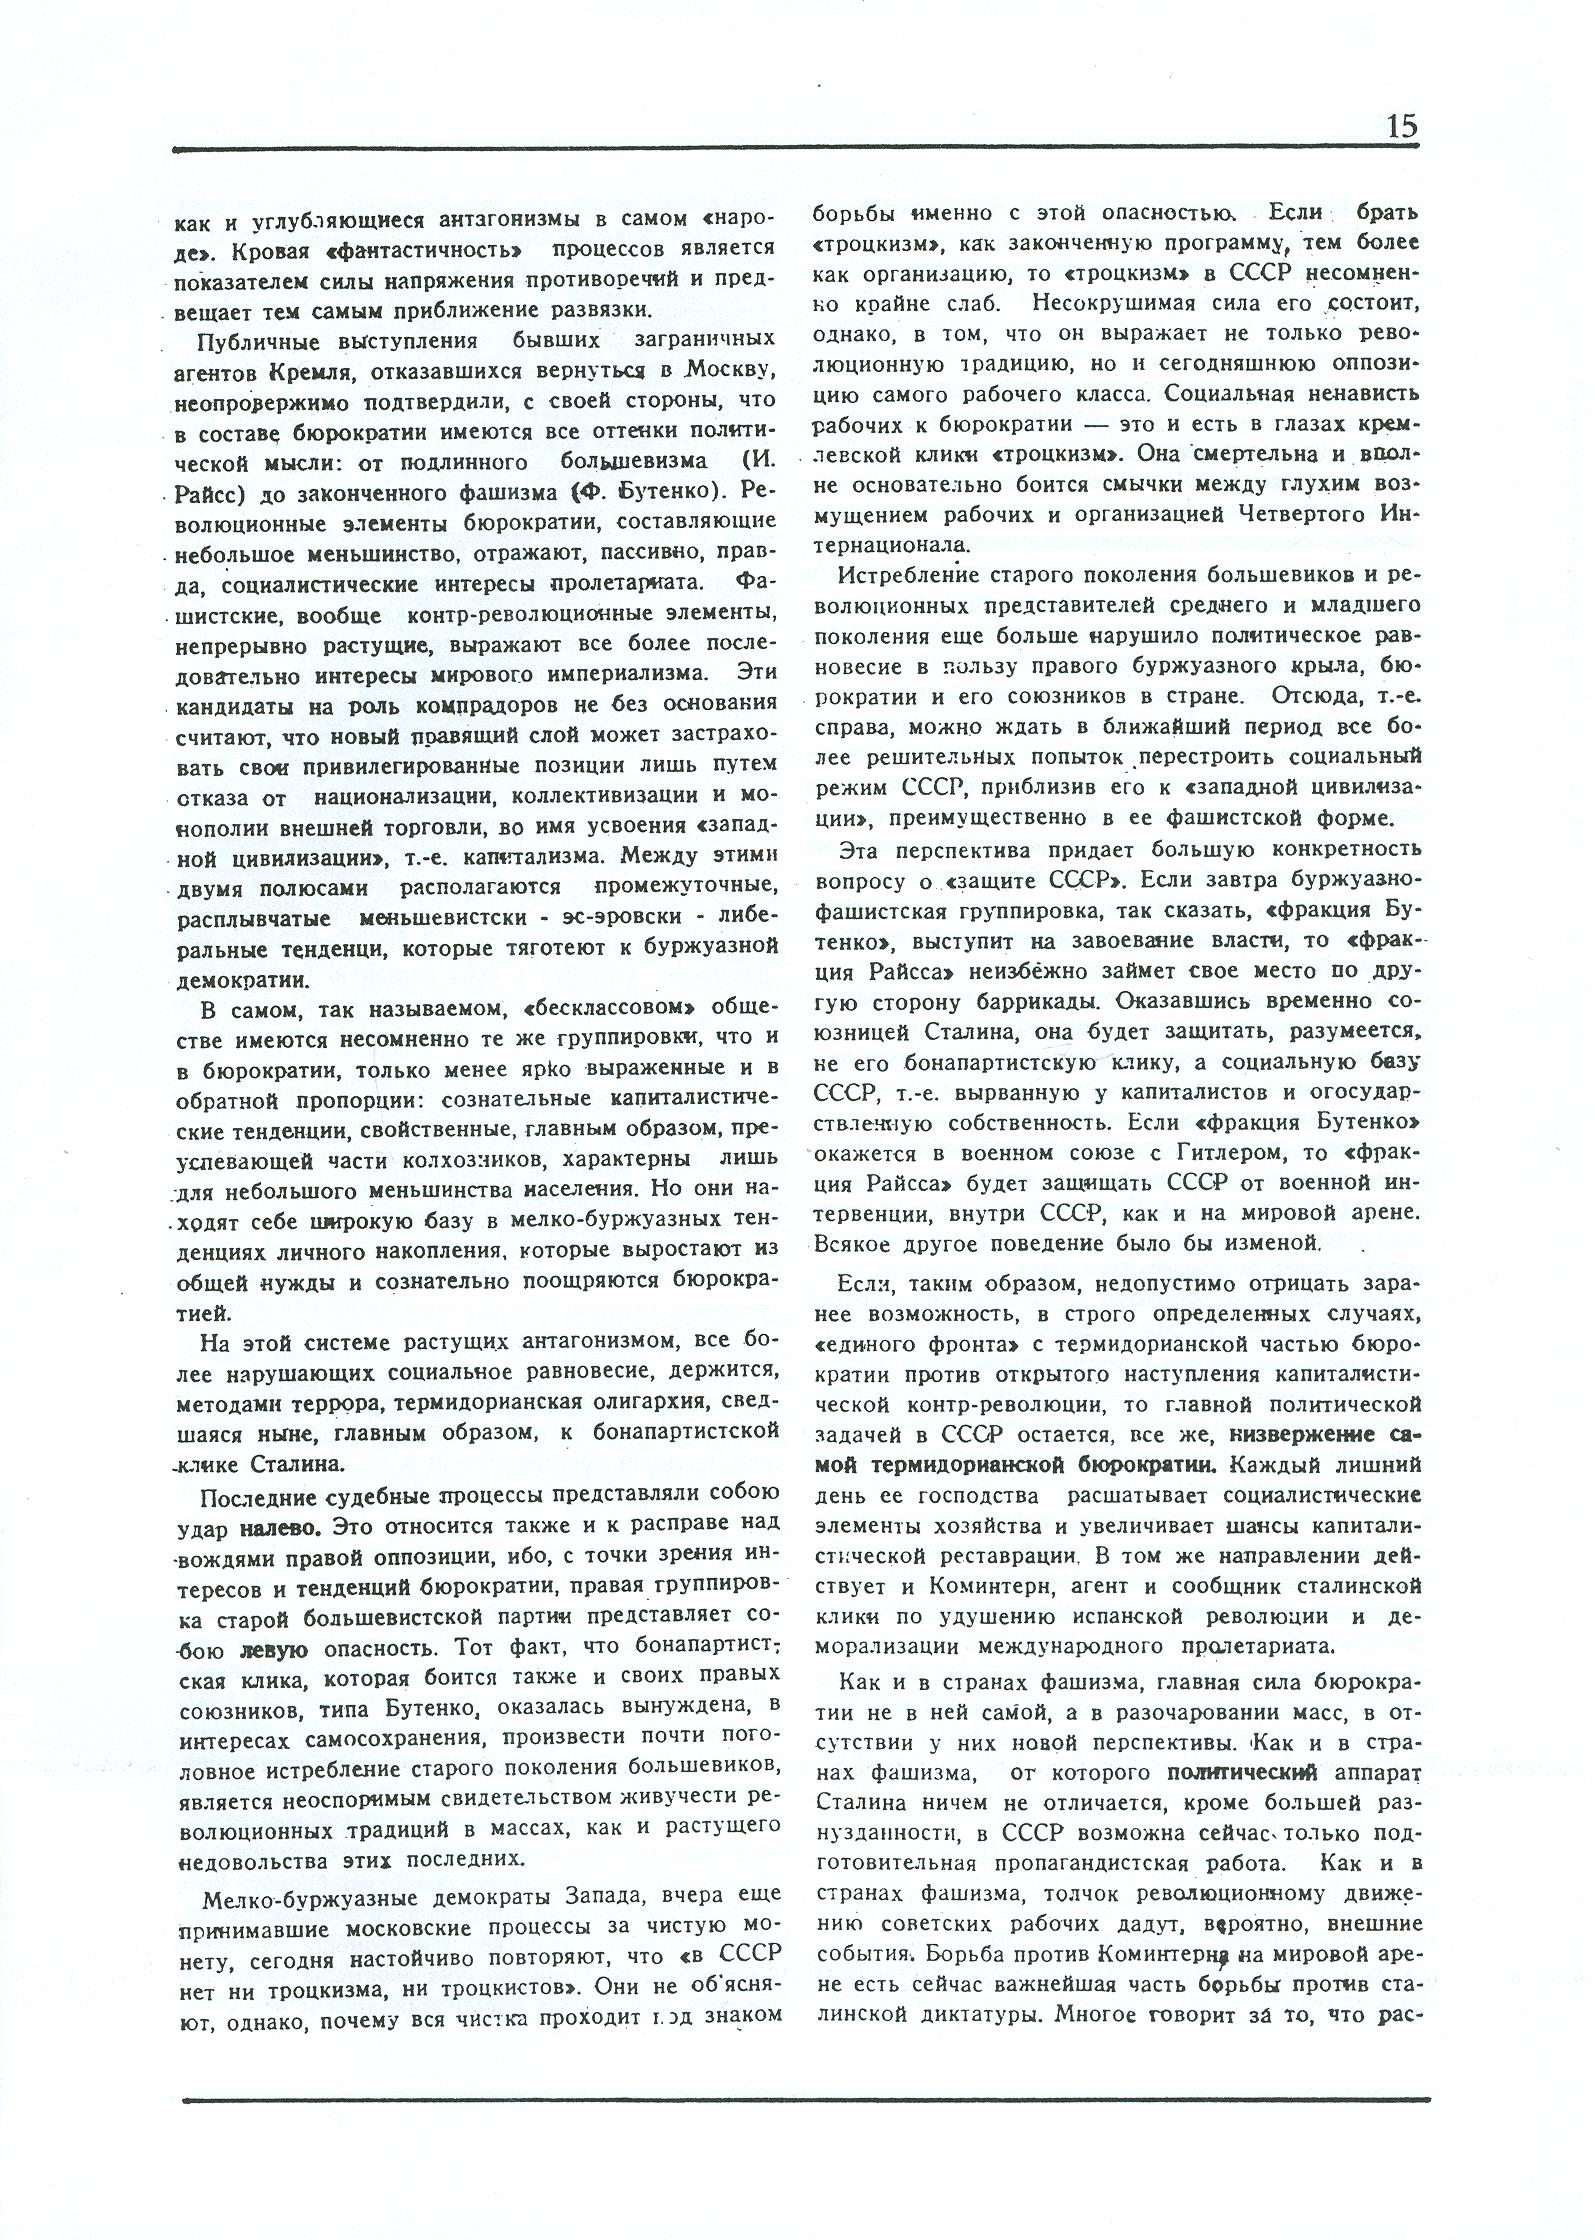 Dagli archivi del bolscevismo n. 1 (marzo 1986) - pag. 15